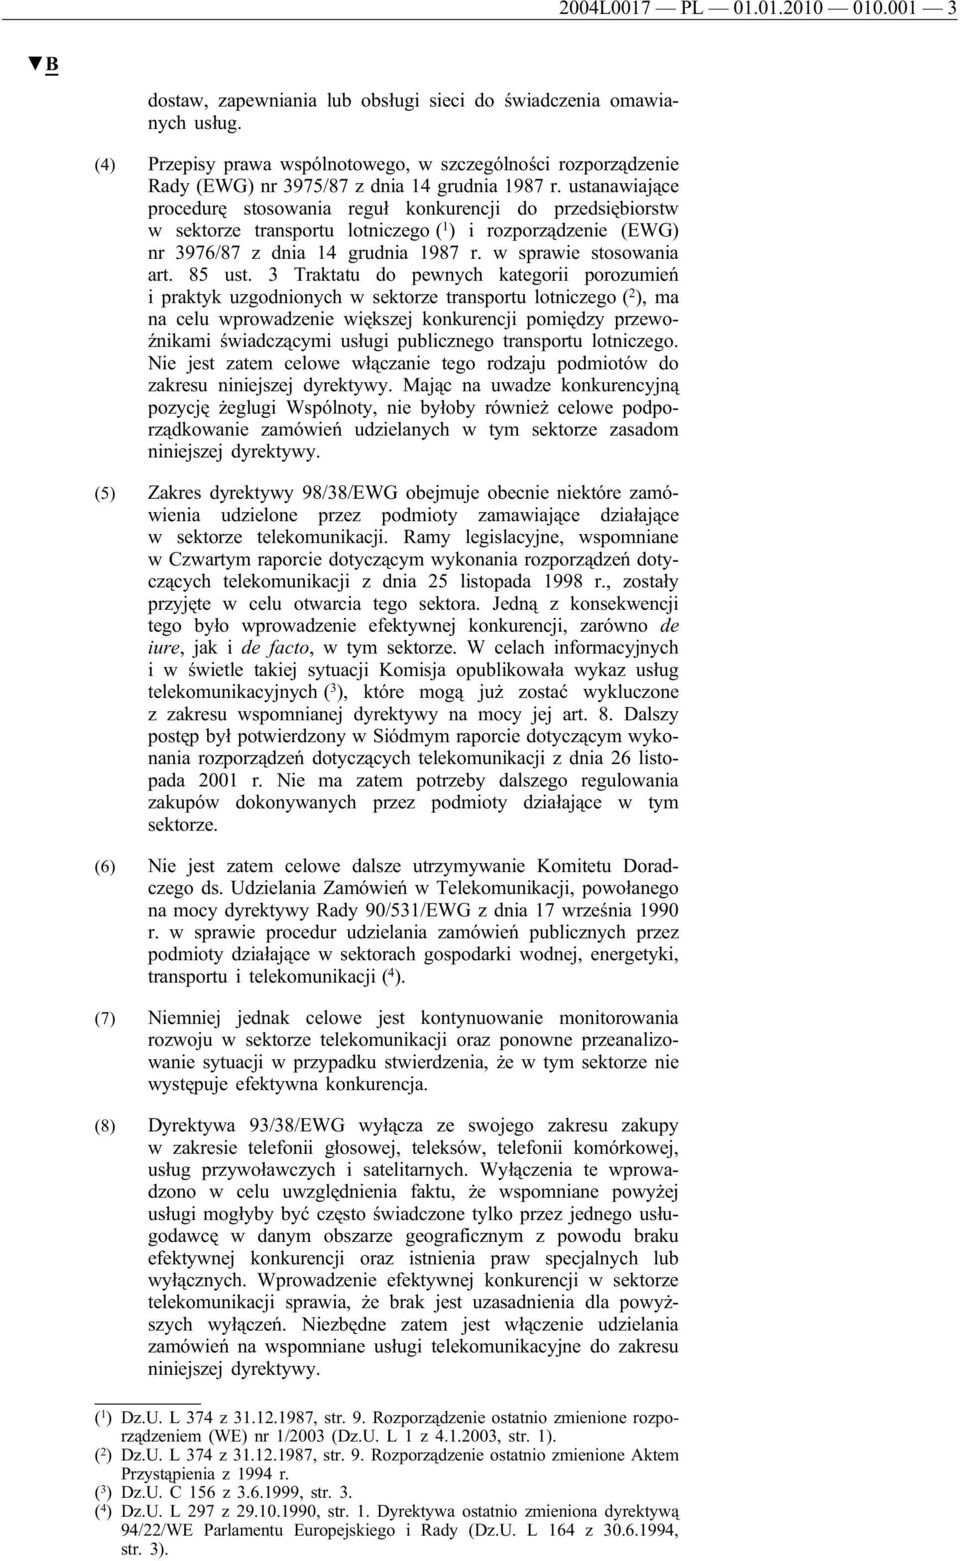 ustanawiające procedurę stosowania reguł konkurencji do przedsiębiorstw w sektorze transportu lotniczego ( 1 ) i rozporządzenie (EWG) nr 3976/87 z dnia 14 grudnia 1987 r. w sprawie stosowania art.